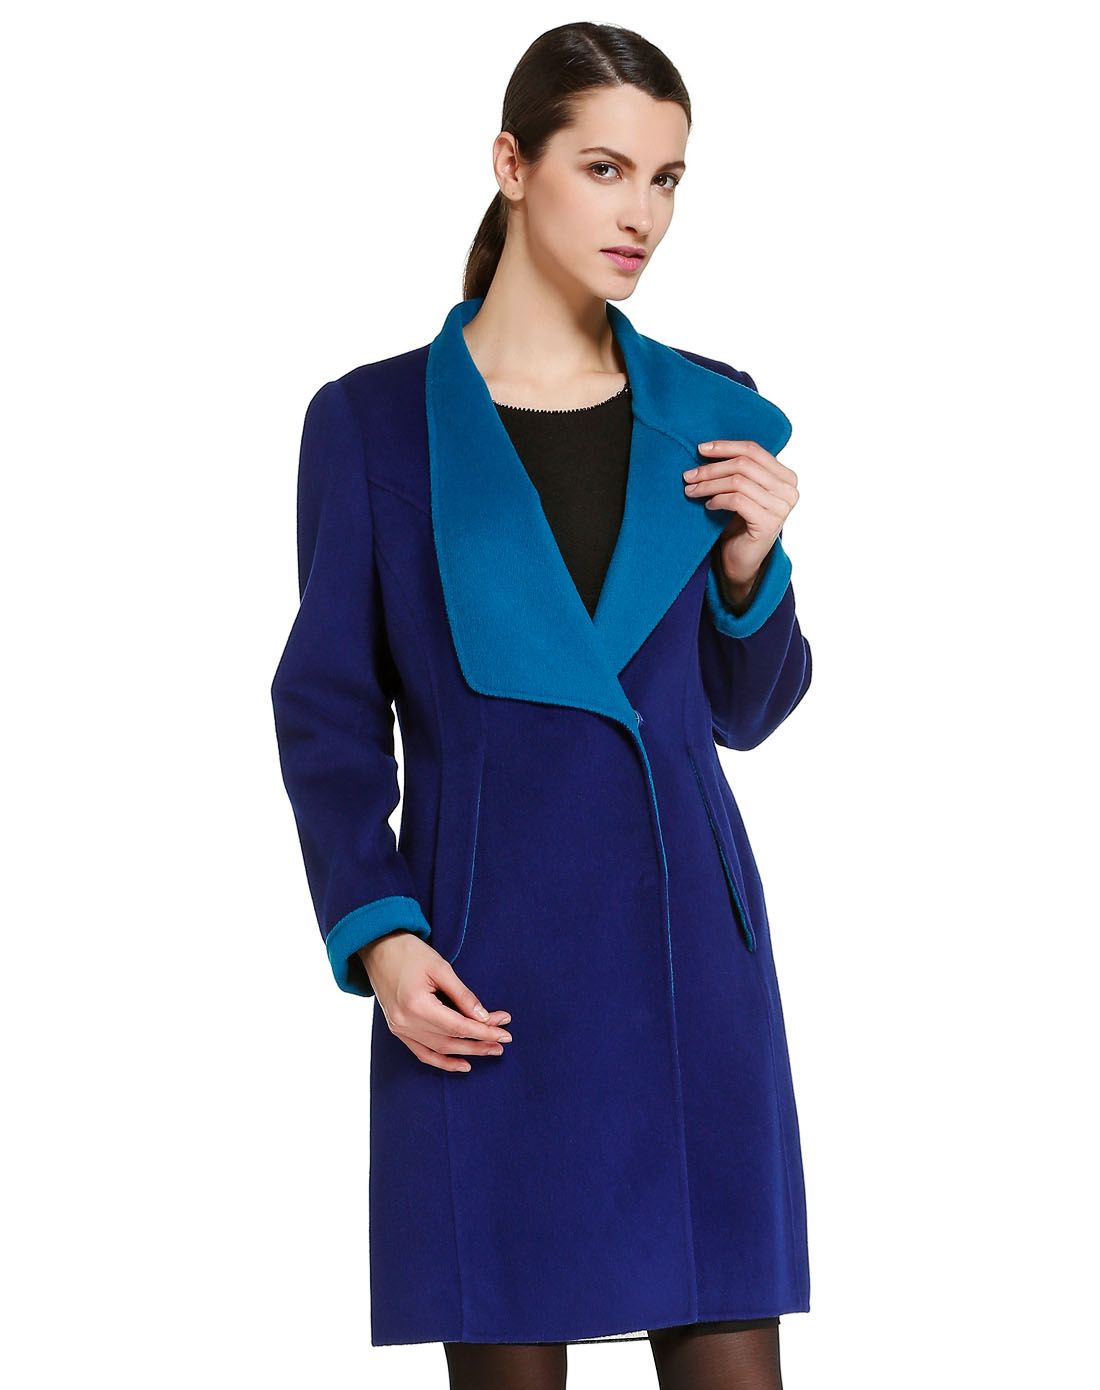 紫蓝/蓝色个性时尚长袖大衣